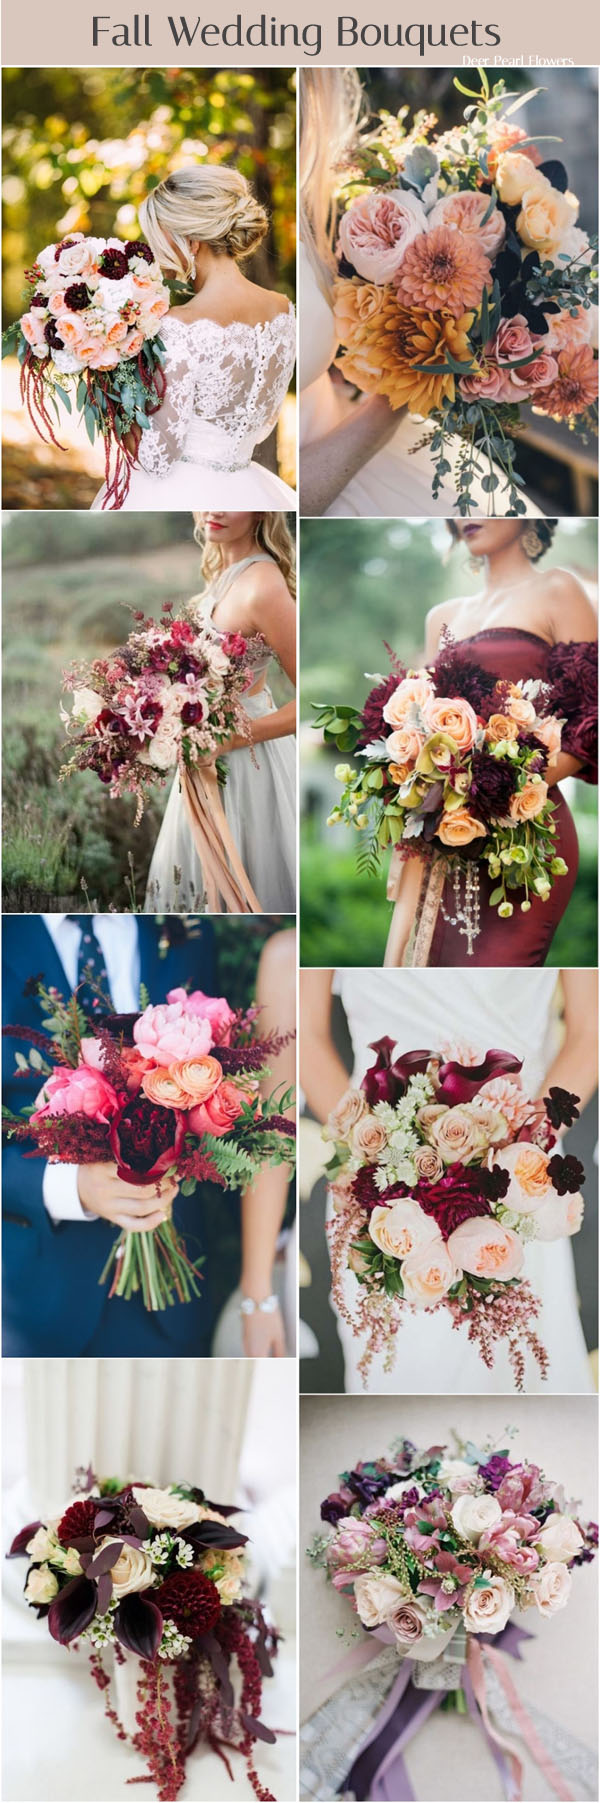 fall wedding bouquet flower ideas